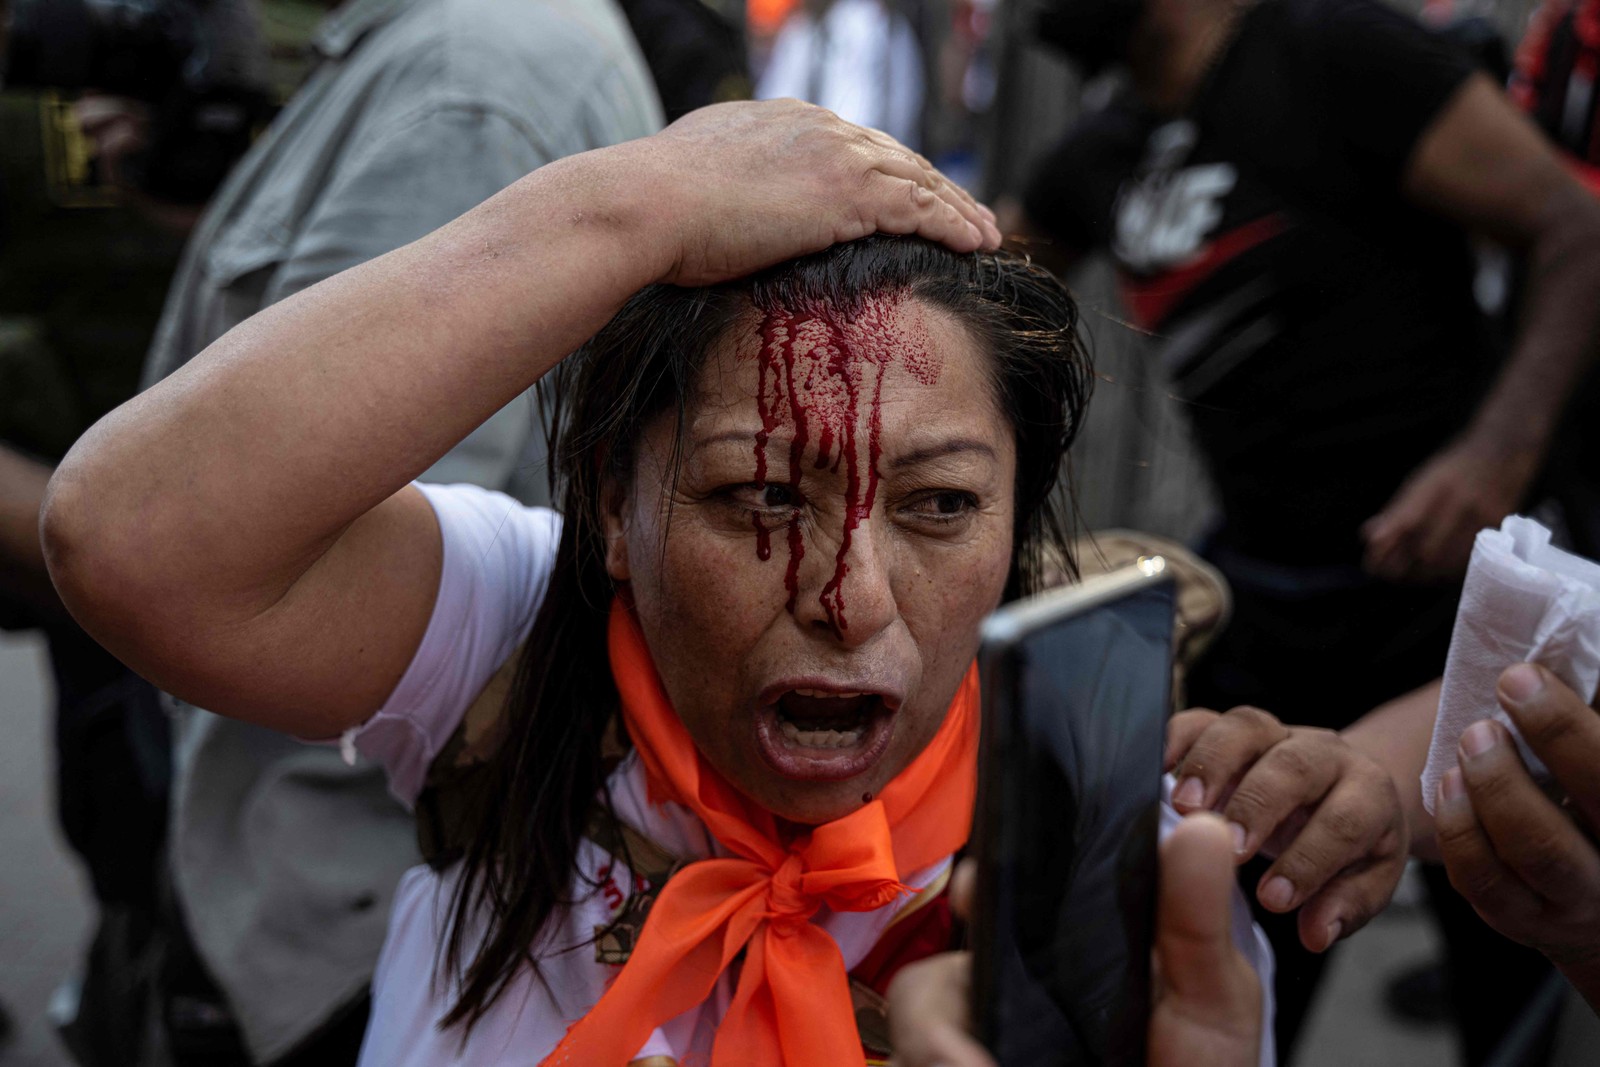 Manifestante é ferida durante protesto contra governo do presidente peruano Pedro Castillo, em Lima, em 20 de novembro de 2022.  — Foto: Ernesto BENAVIDES / AFP